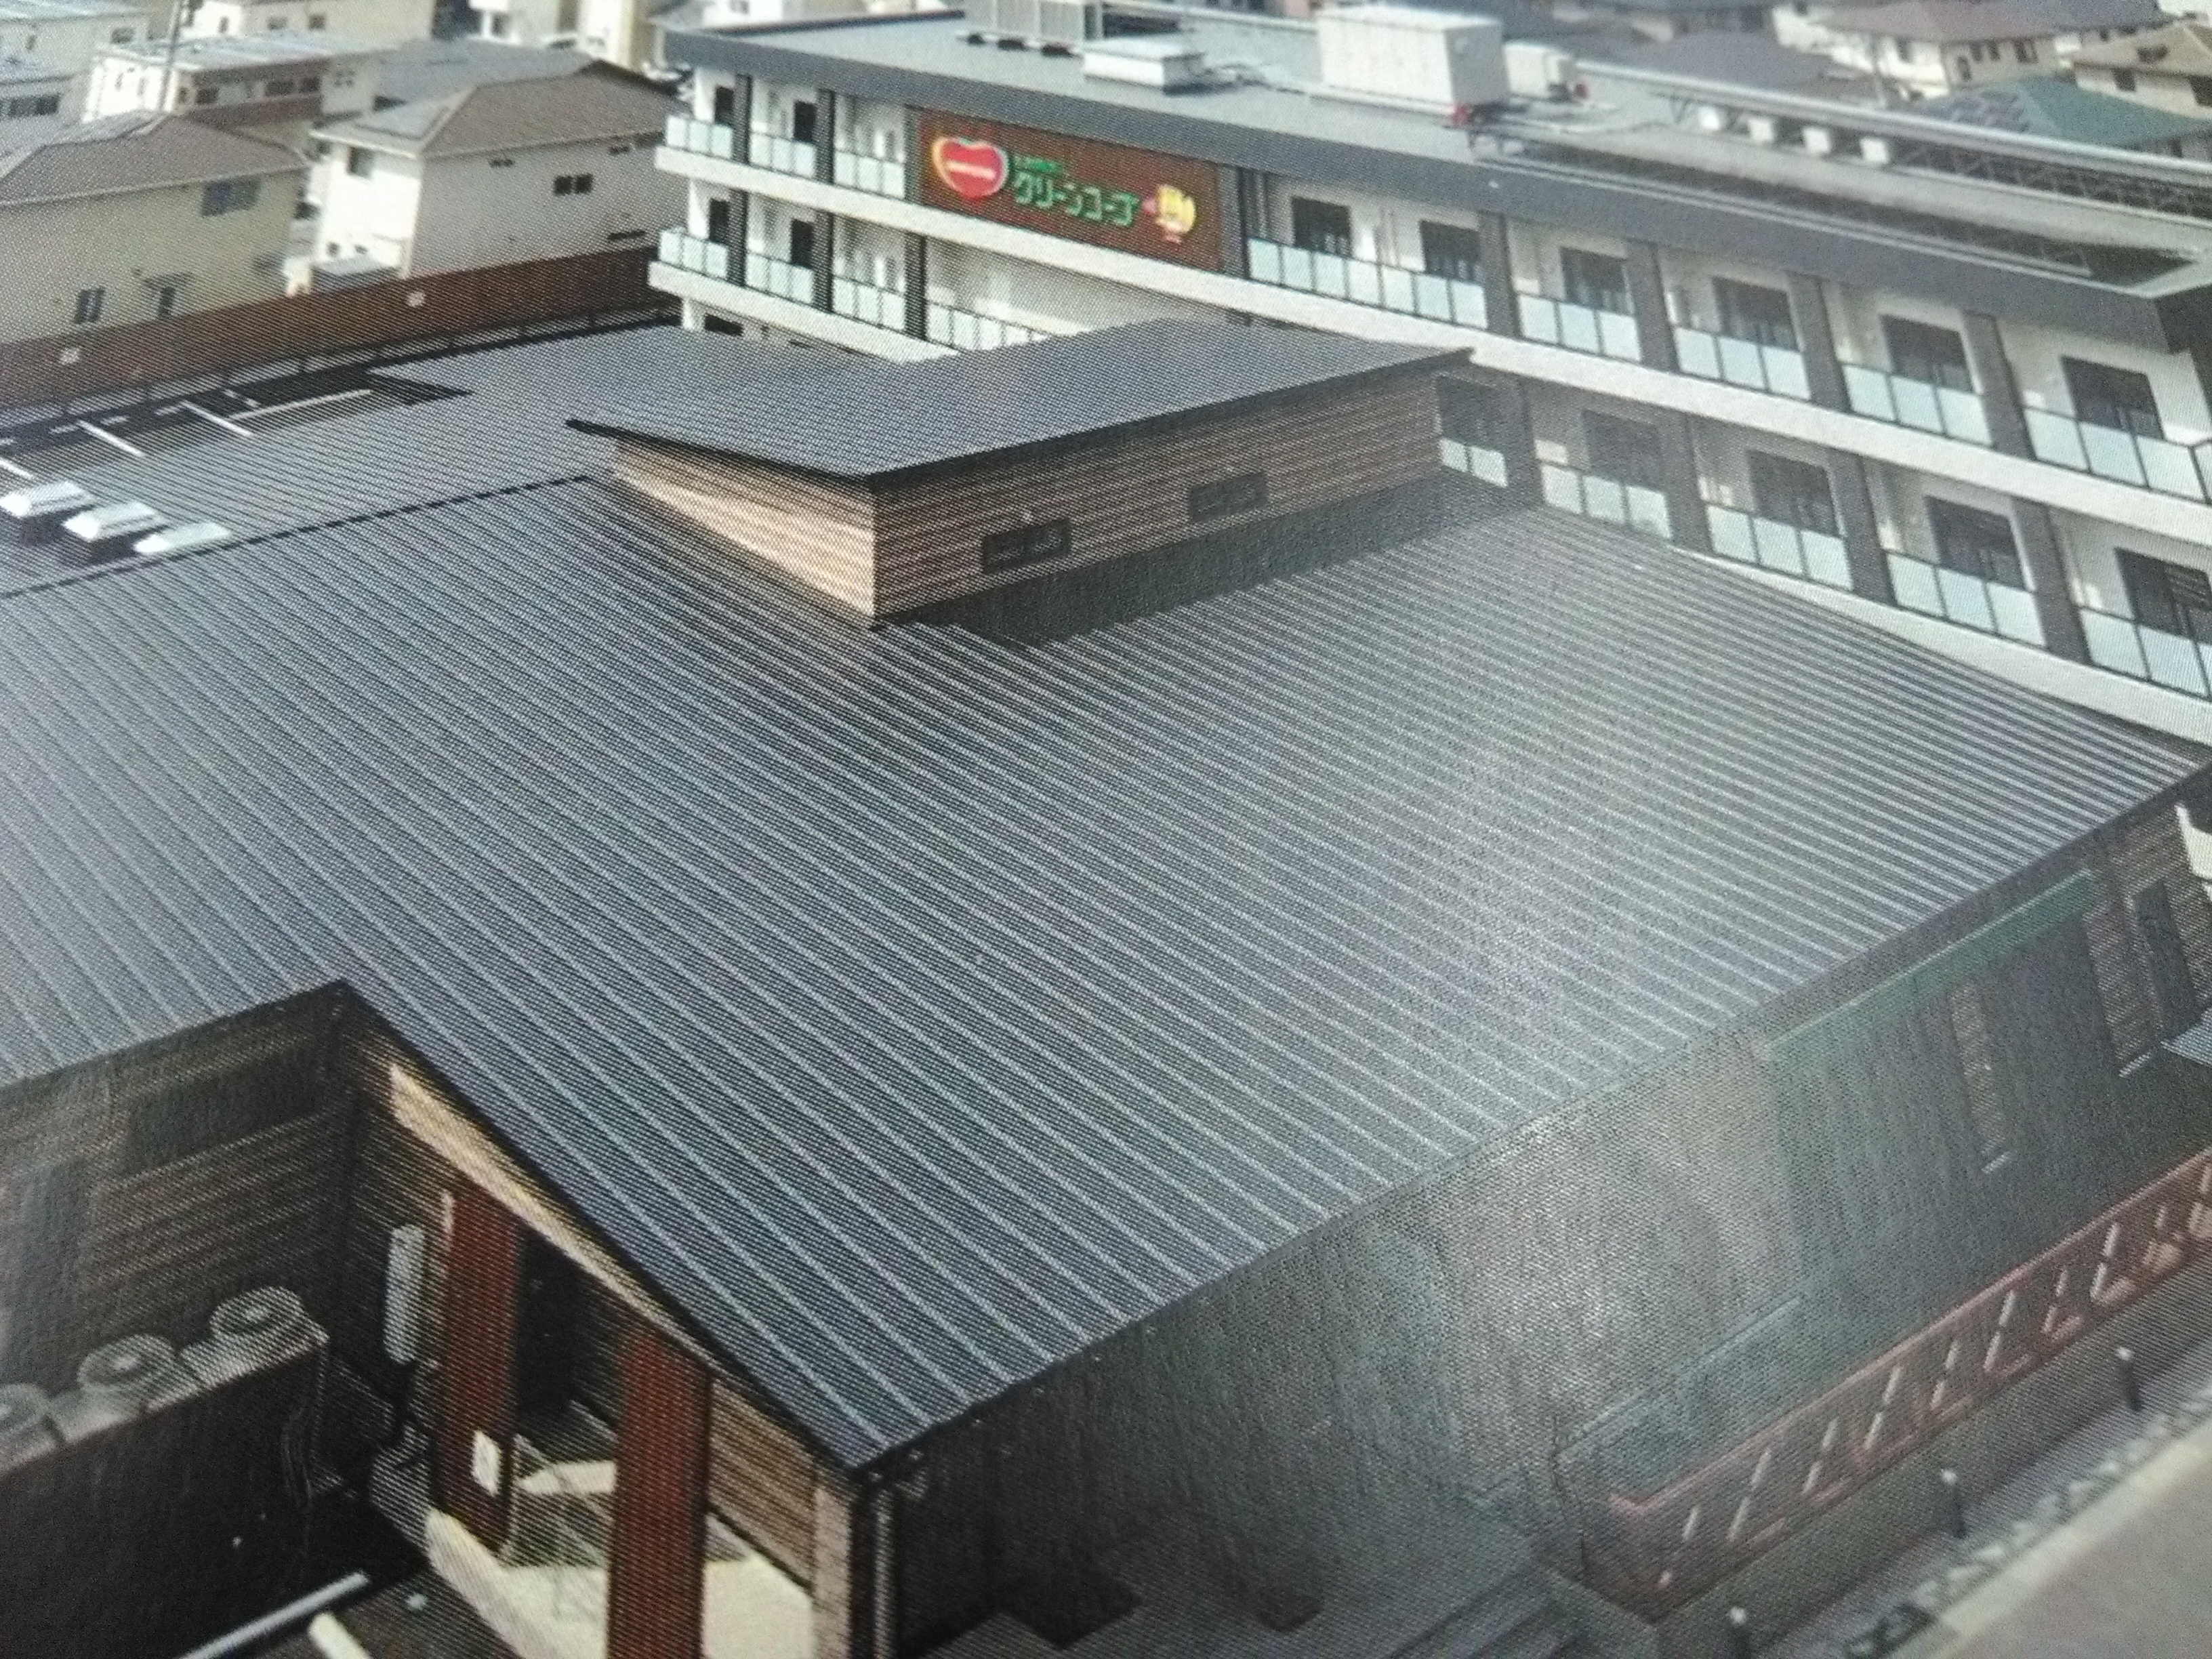 ケアプランセンター北九州がある「ふくしセンターおひらき」です。